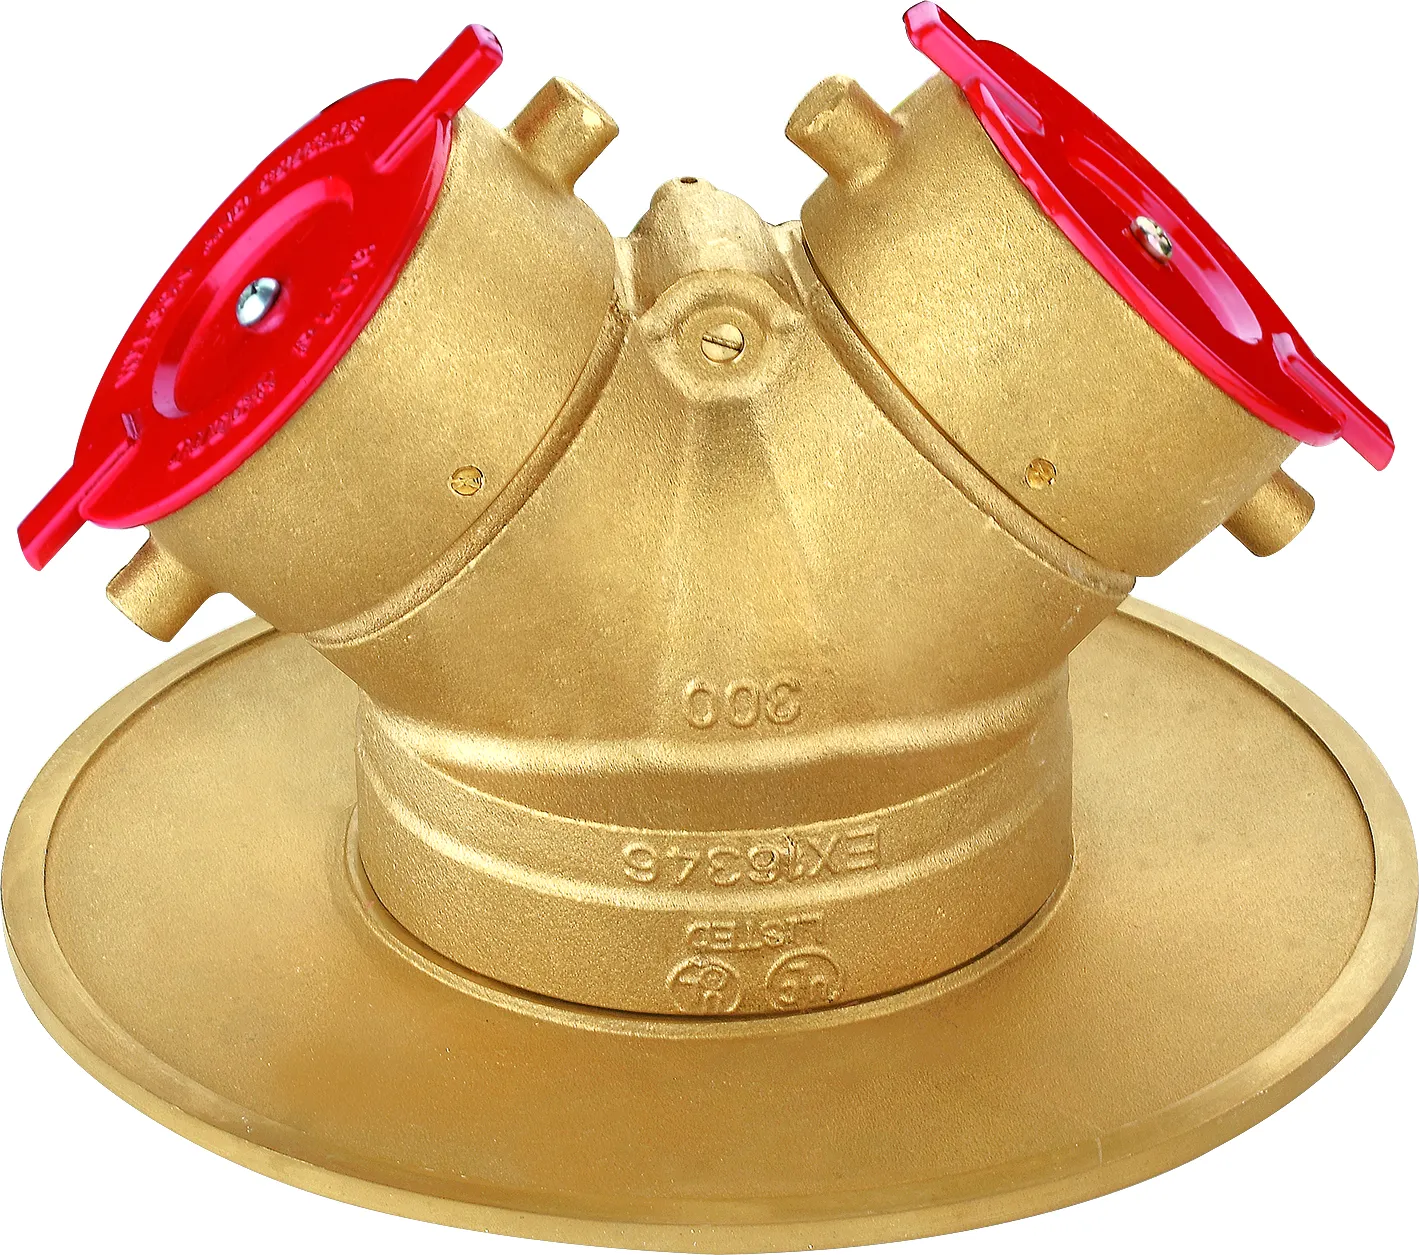 Tipo-UL FM Conexões siamesas em dois sentidos Clapper Npt rosca fêmea de controle de válvula de bronze fabricante de fábrica